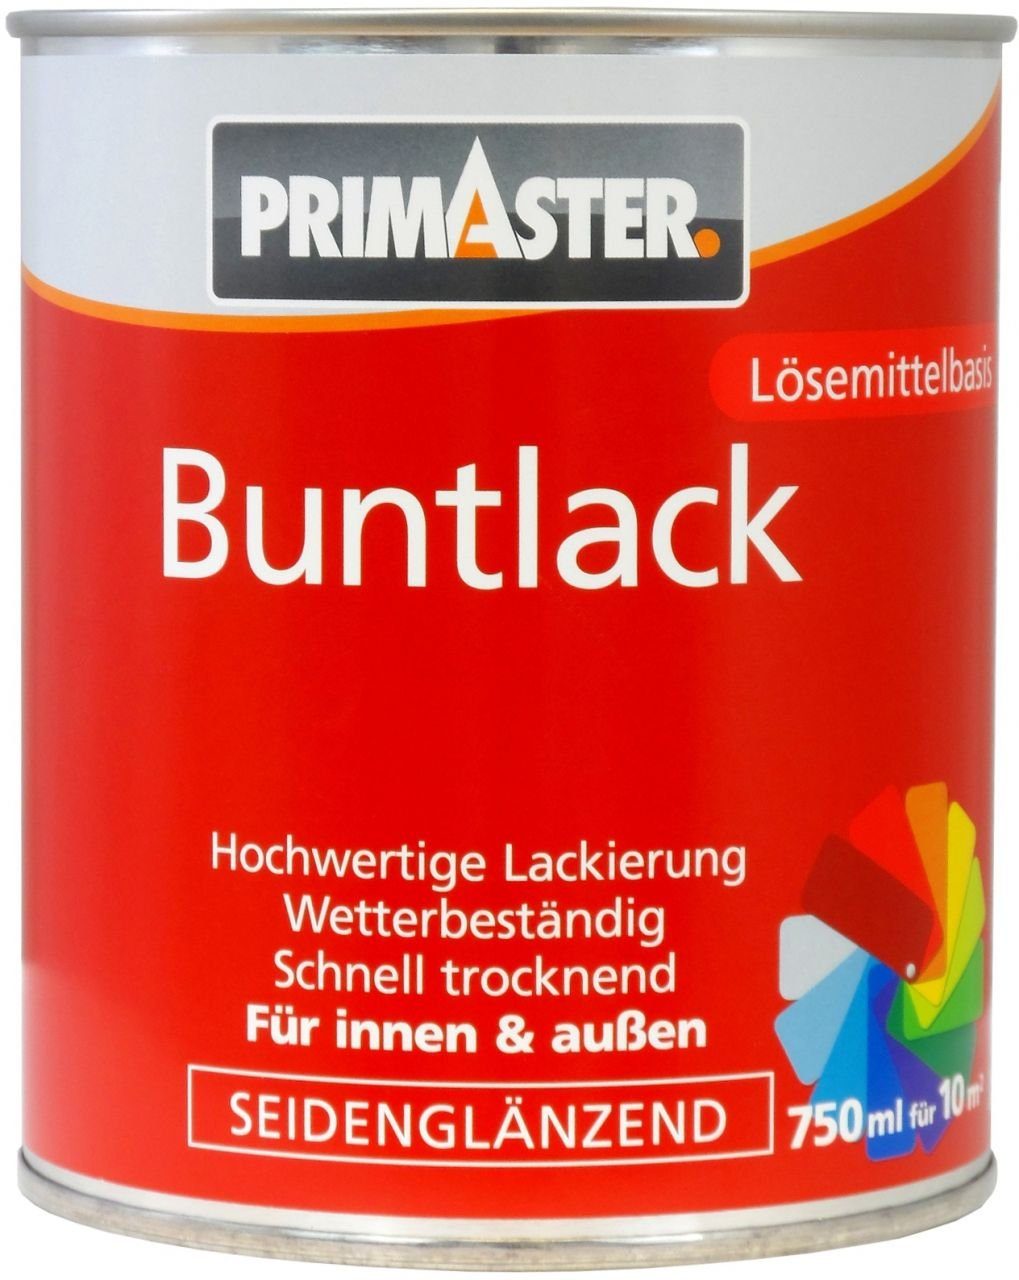 Acryl-Buntlack Buntlack enzianblau RAL ml Primaster Primaster 5010 750